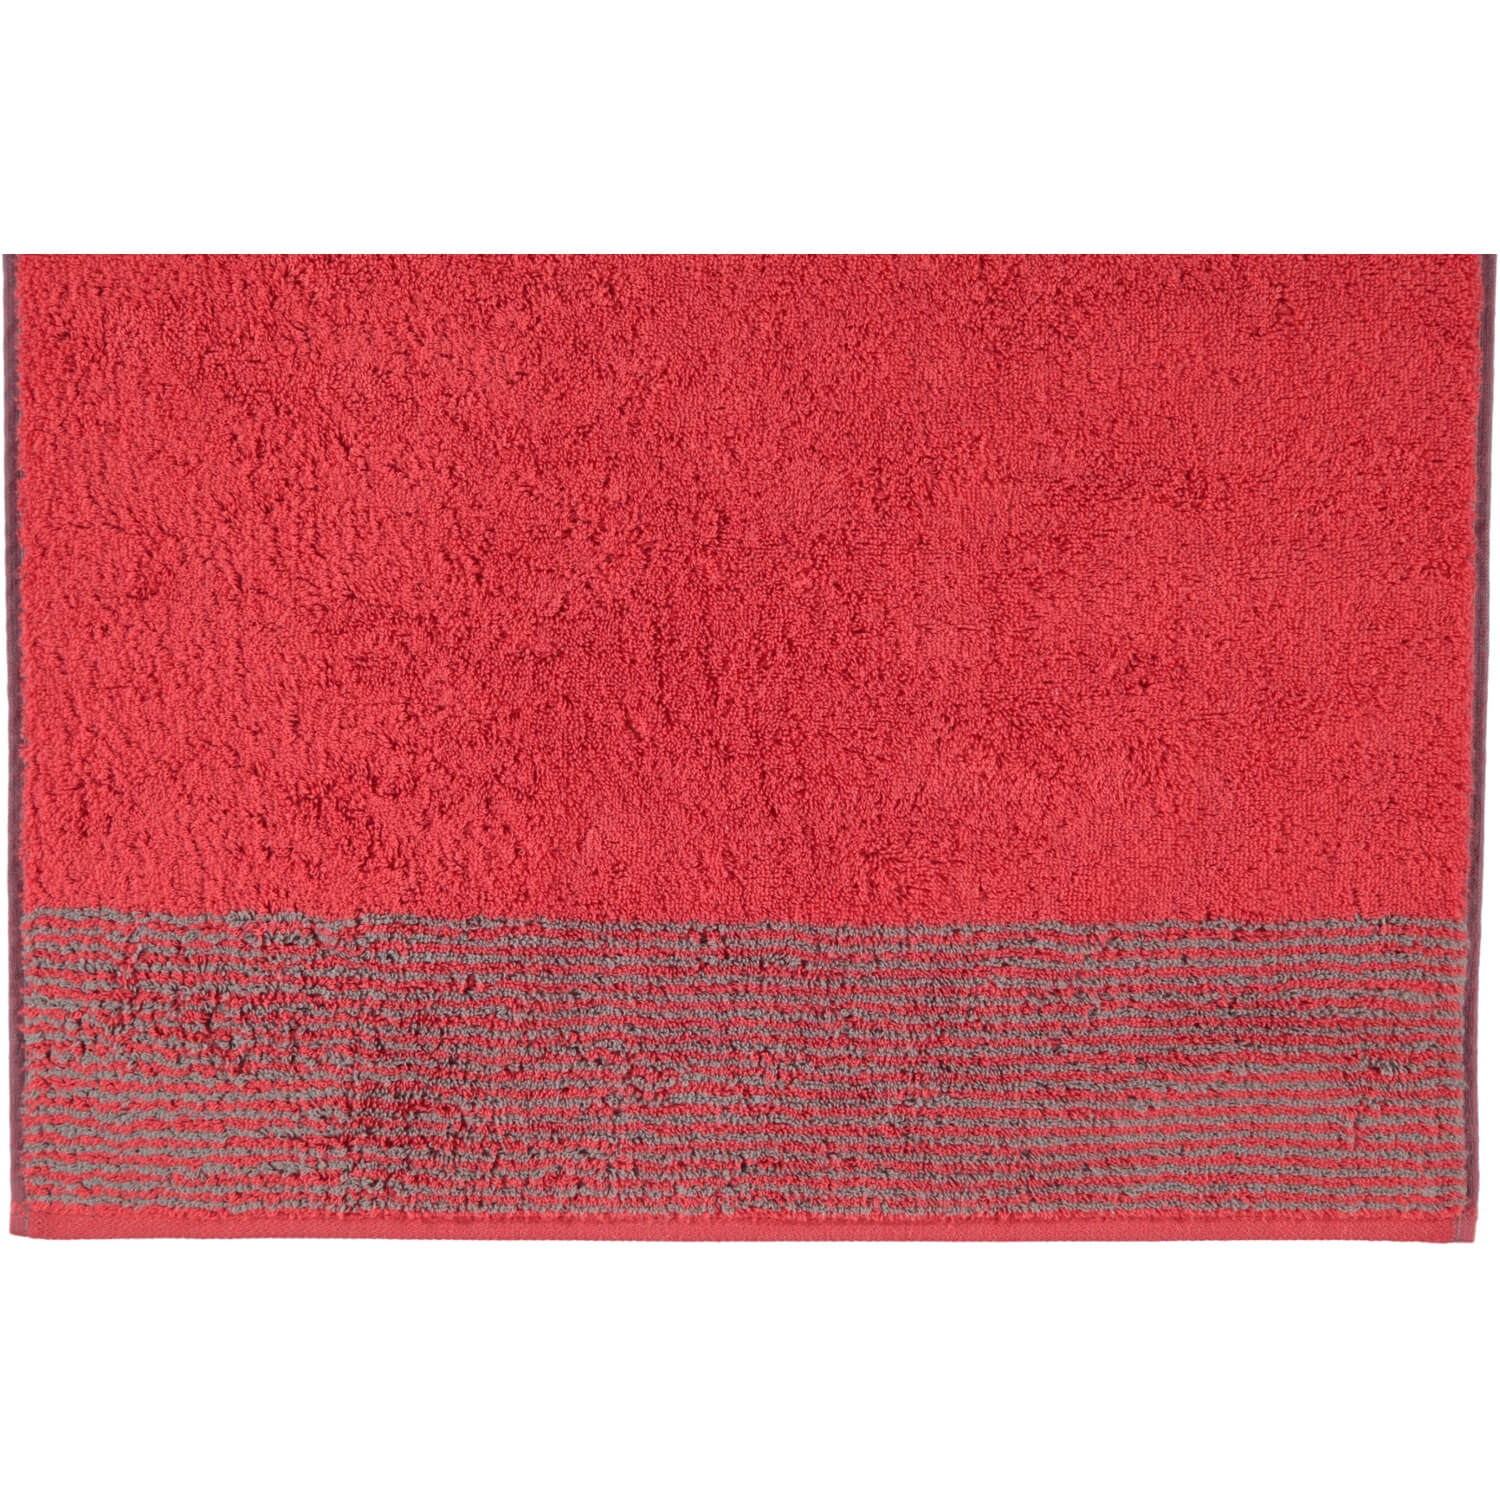 Полотенце Two-Tone Rot Cawo Германия ☞ Размер: 30 x 50 см